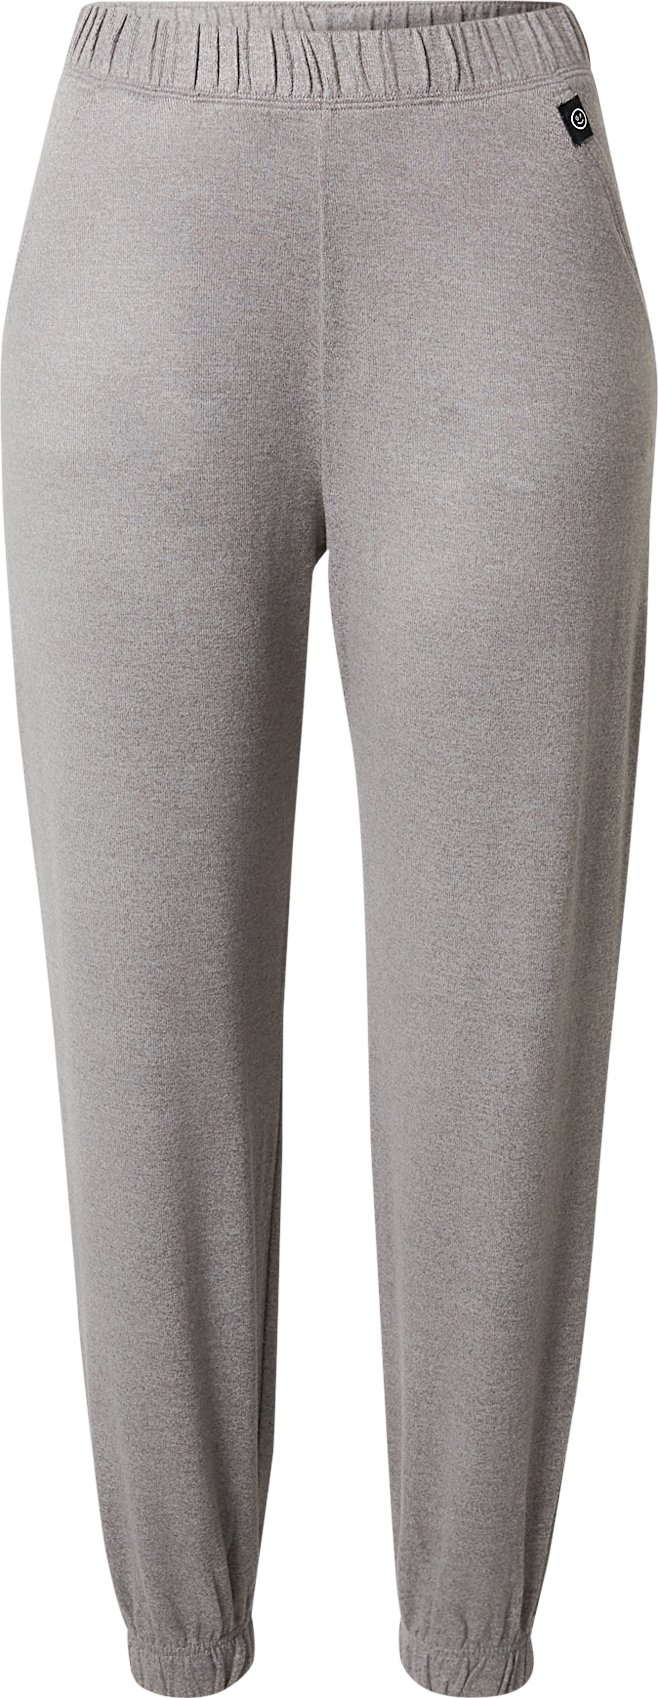 Gilly Hicks Pyžamové kalhoty šedý melír / černá / bílá